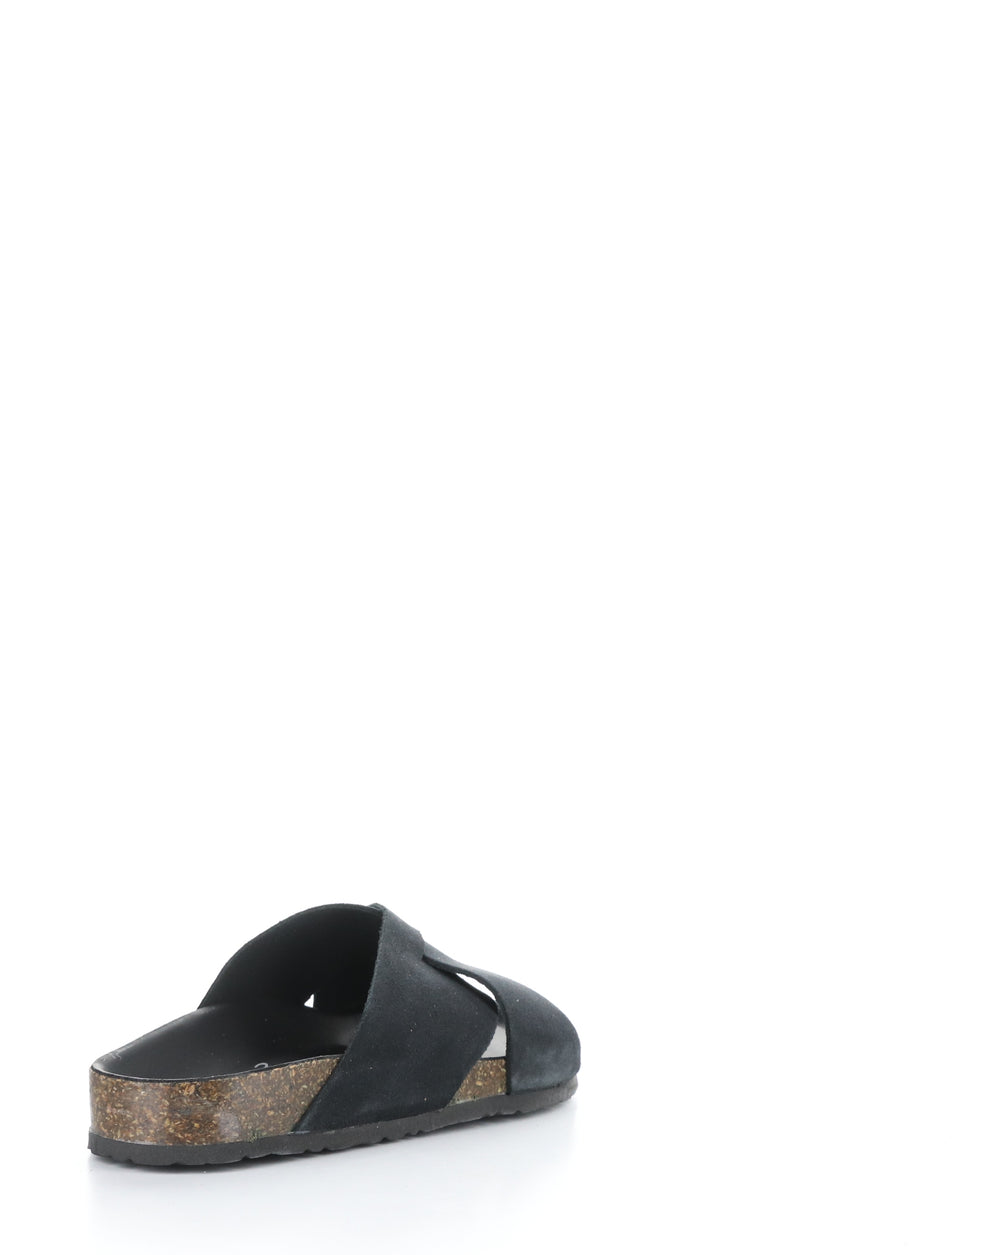 MAISIE BLACK Slip-on Sandals